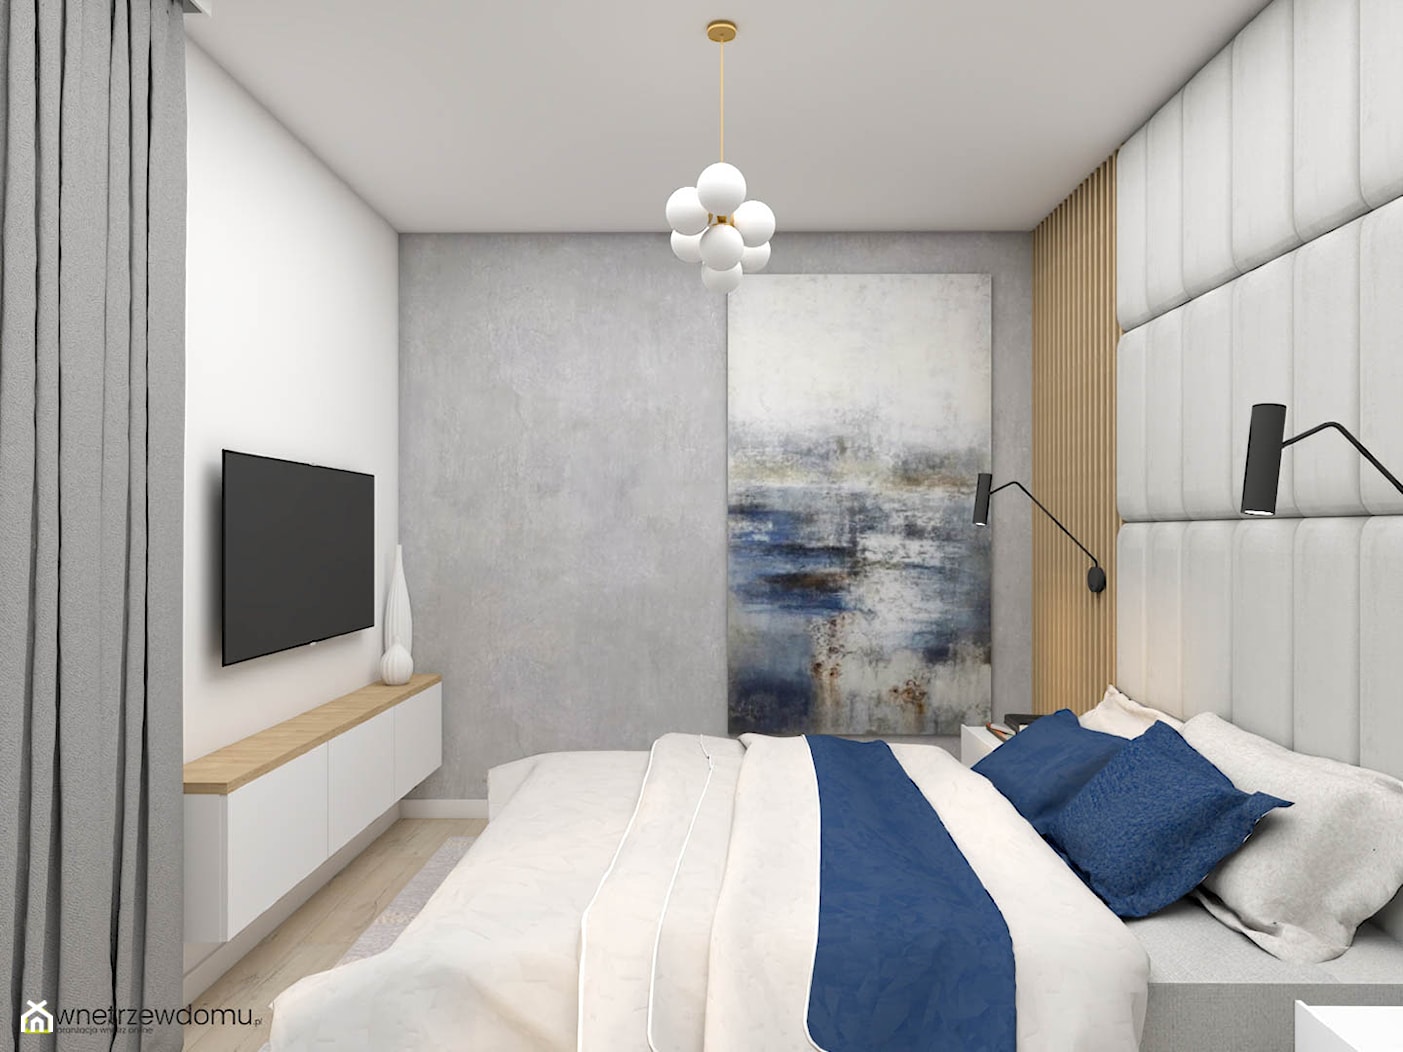 Nowoczesna sypialnia z hotelowym zacięciem - zdjęcie od wnetrzewdomu - Homebook